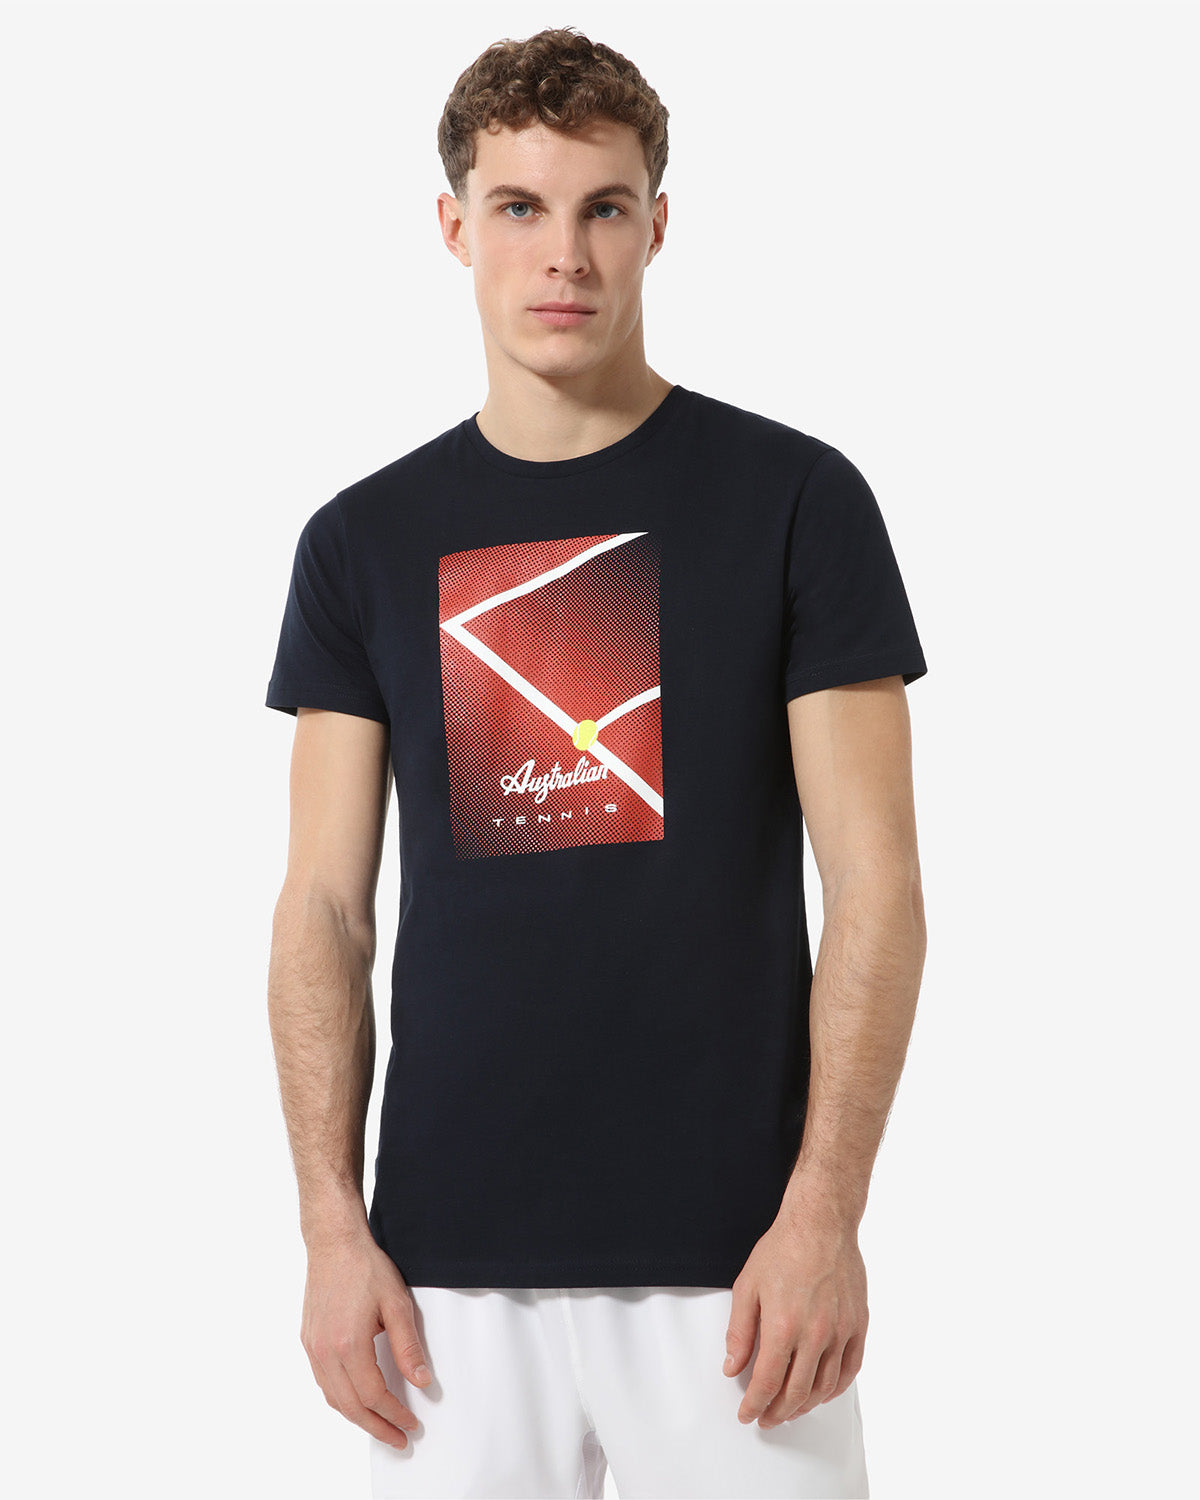 Court T-shirt: Australian Tennis